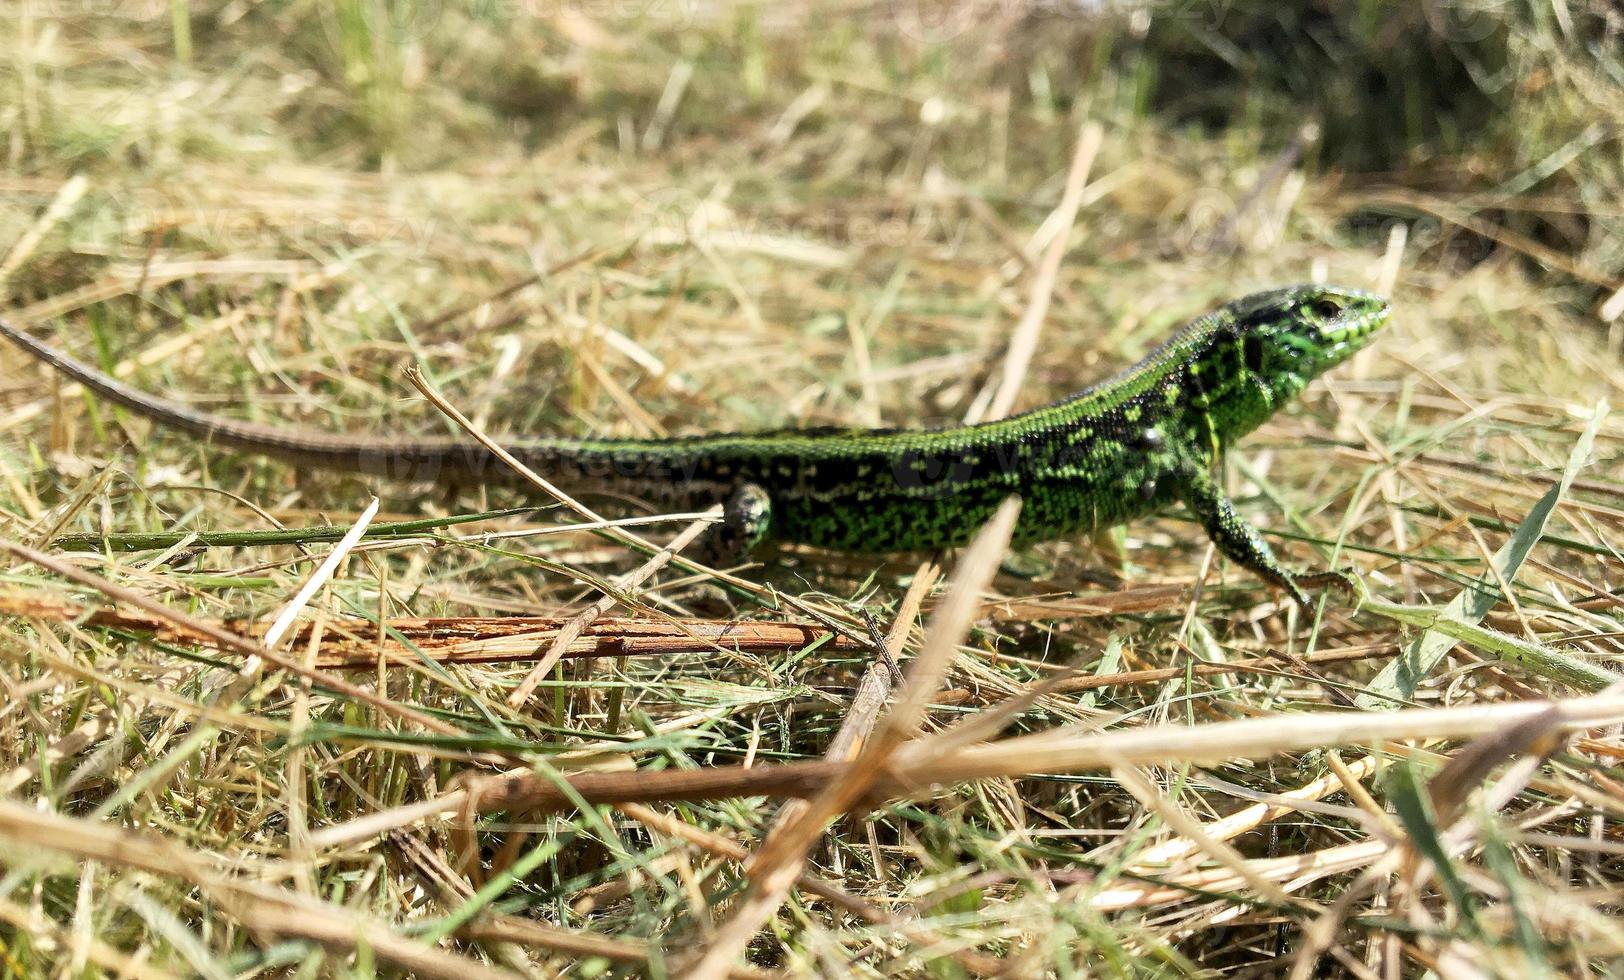 lindas escamas verdes para o corpo do lagarto sentado na grama seca foto